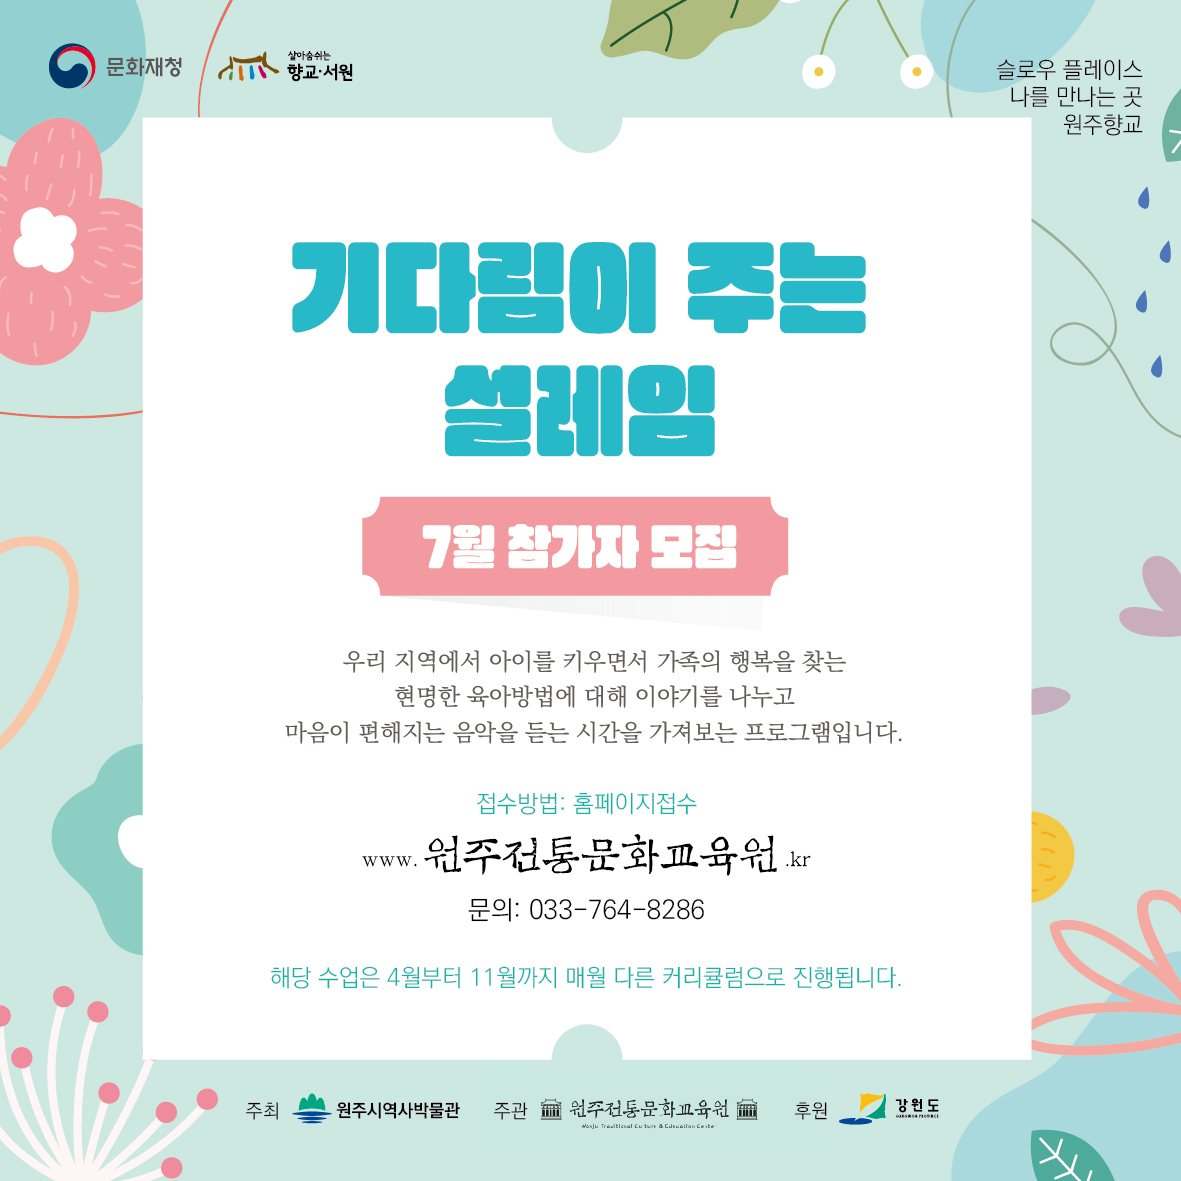 7월 설레이는 기다림 -태교가족공연+강연